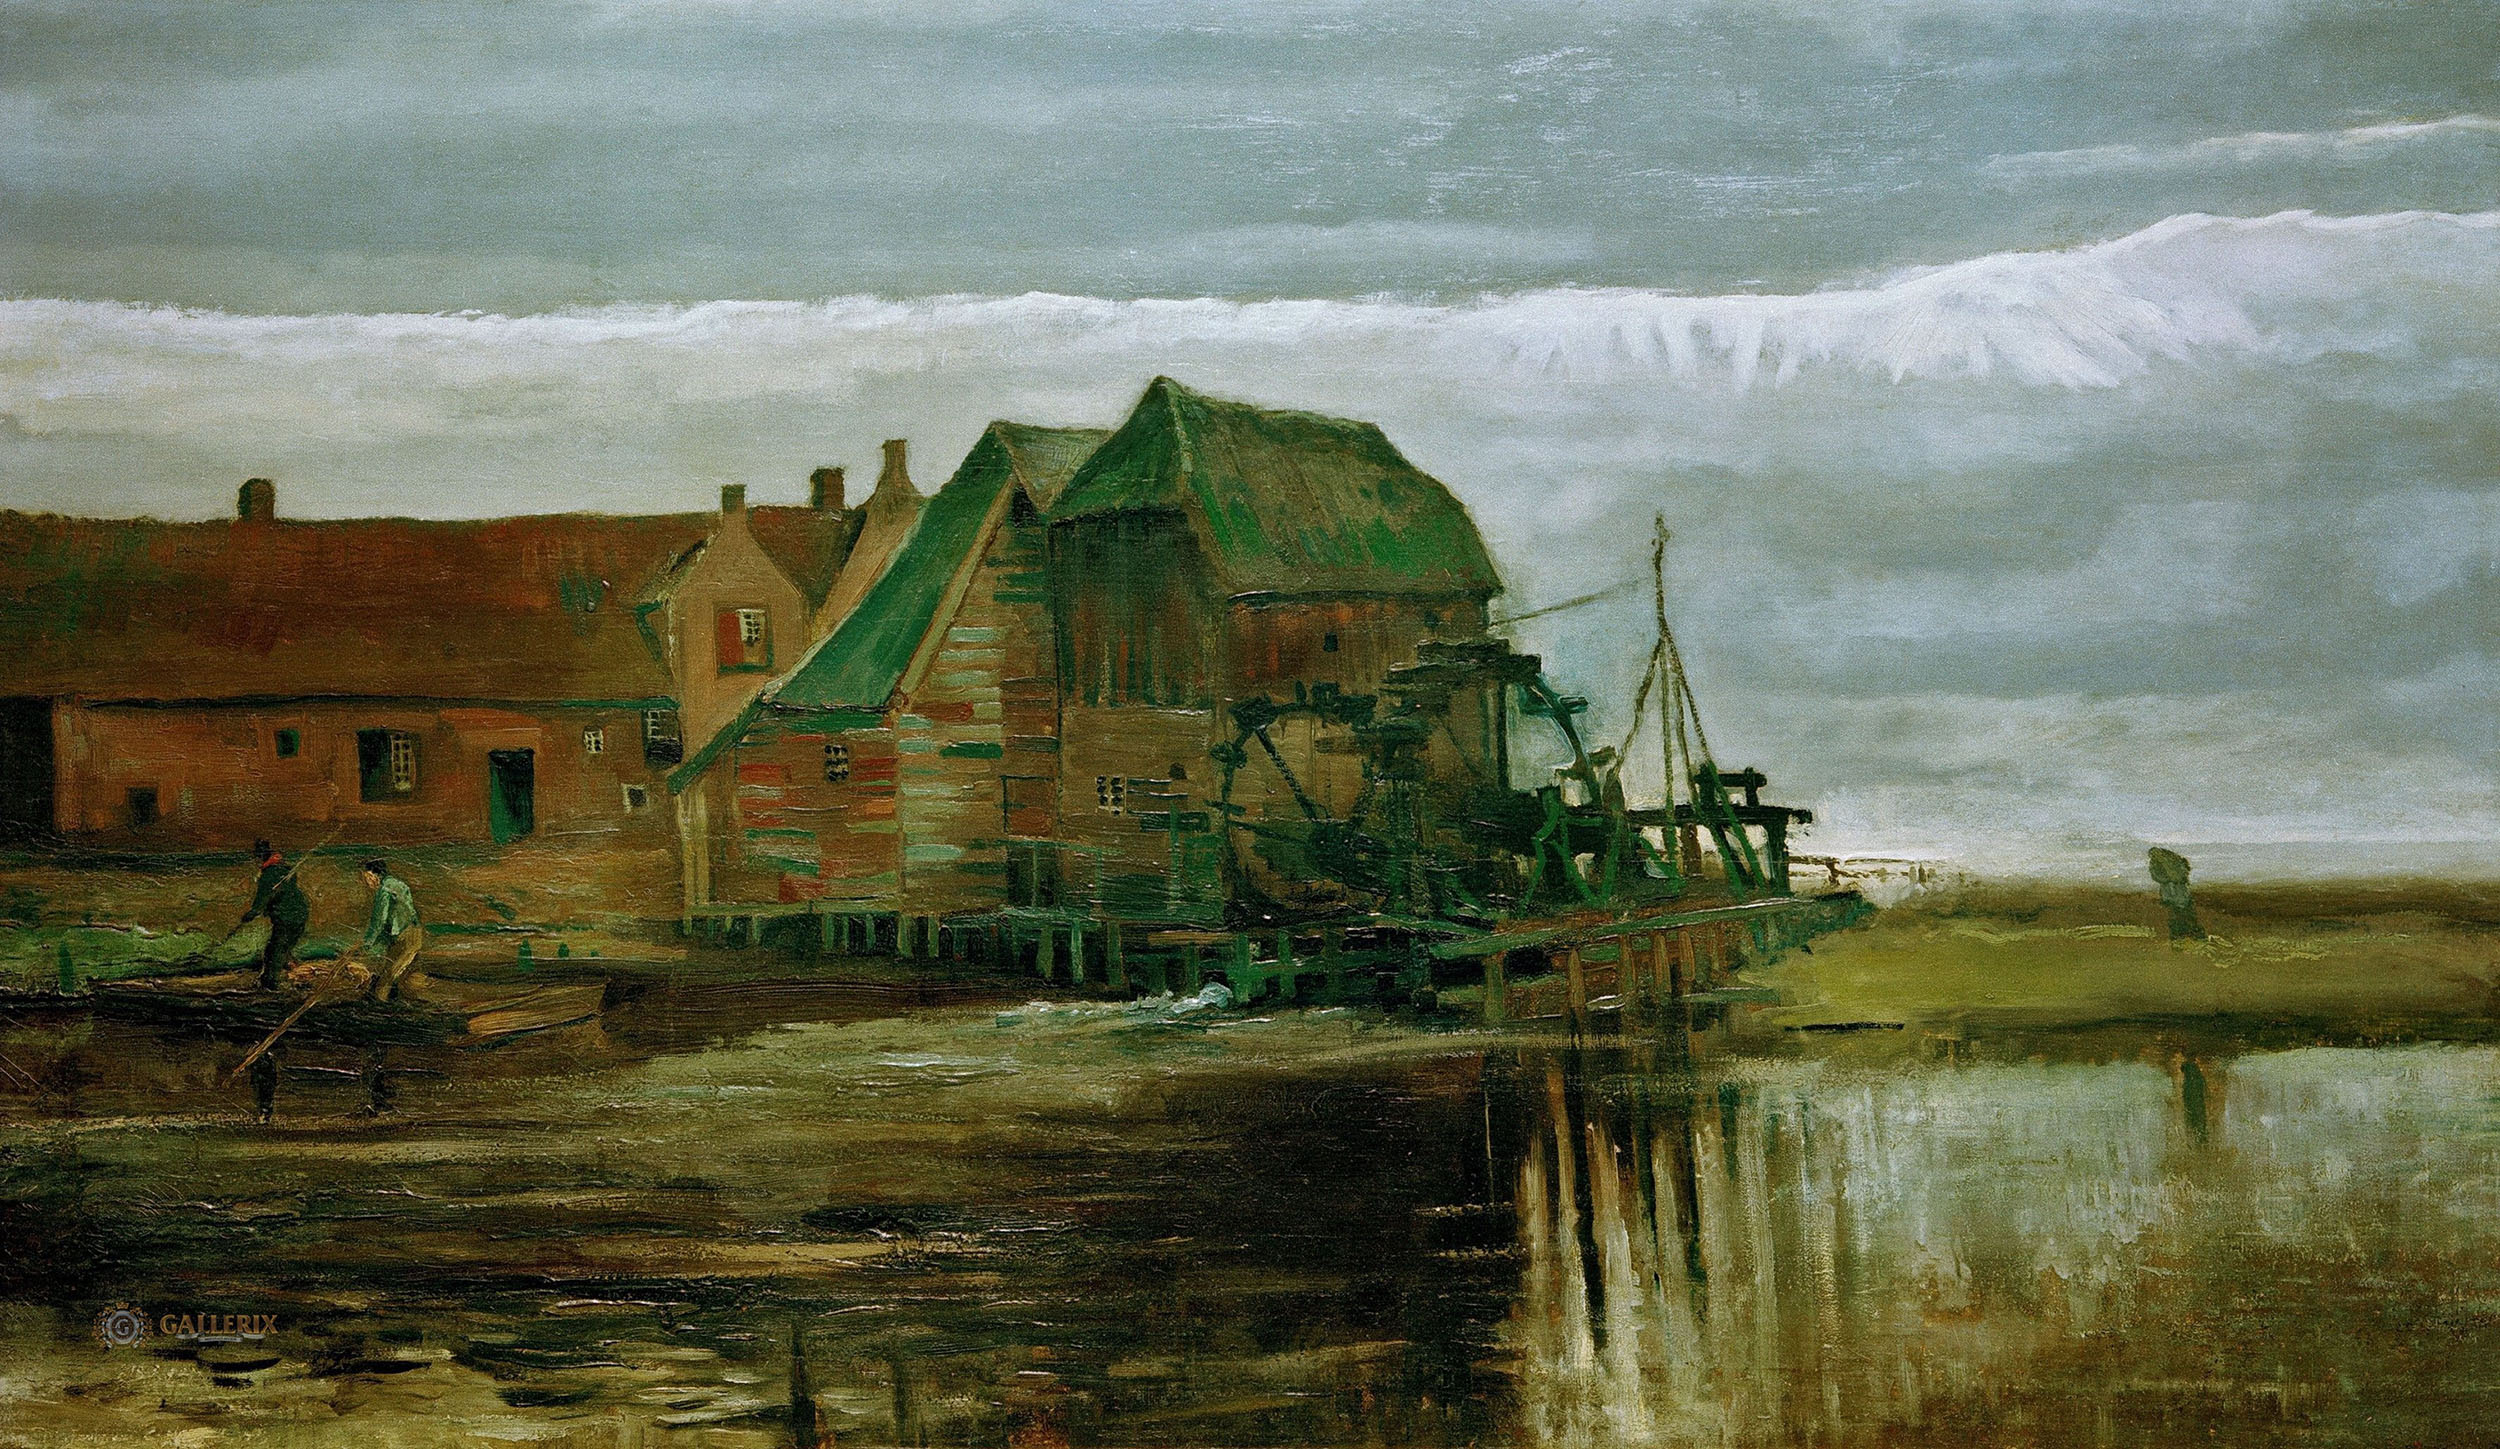 Винсент Ван Гог. "Водяная мельница в Геннепе". 1884.